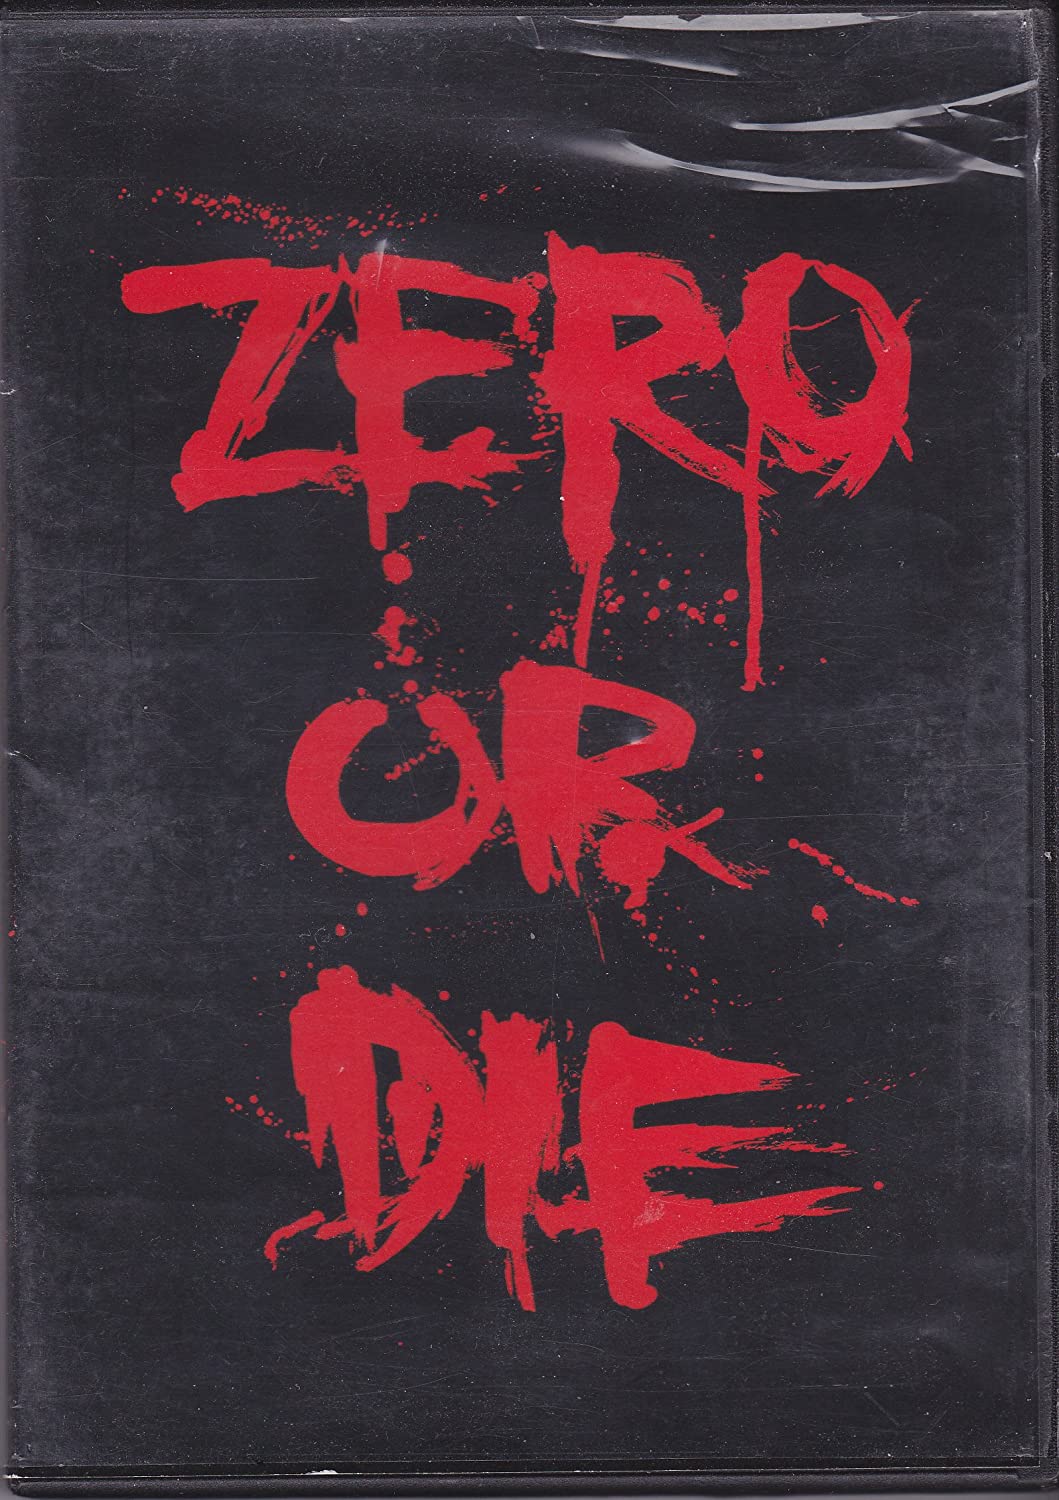 Zero - New Blood cover